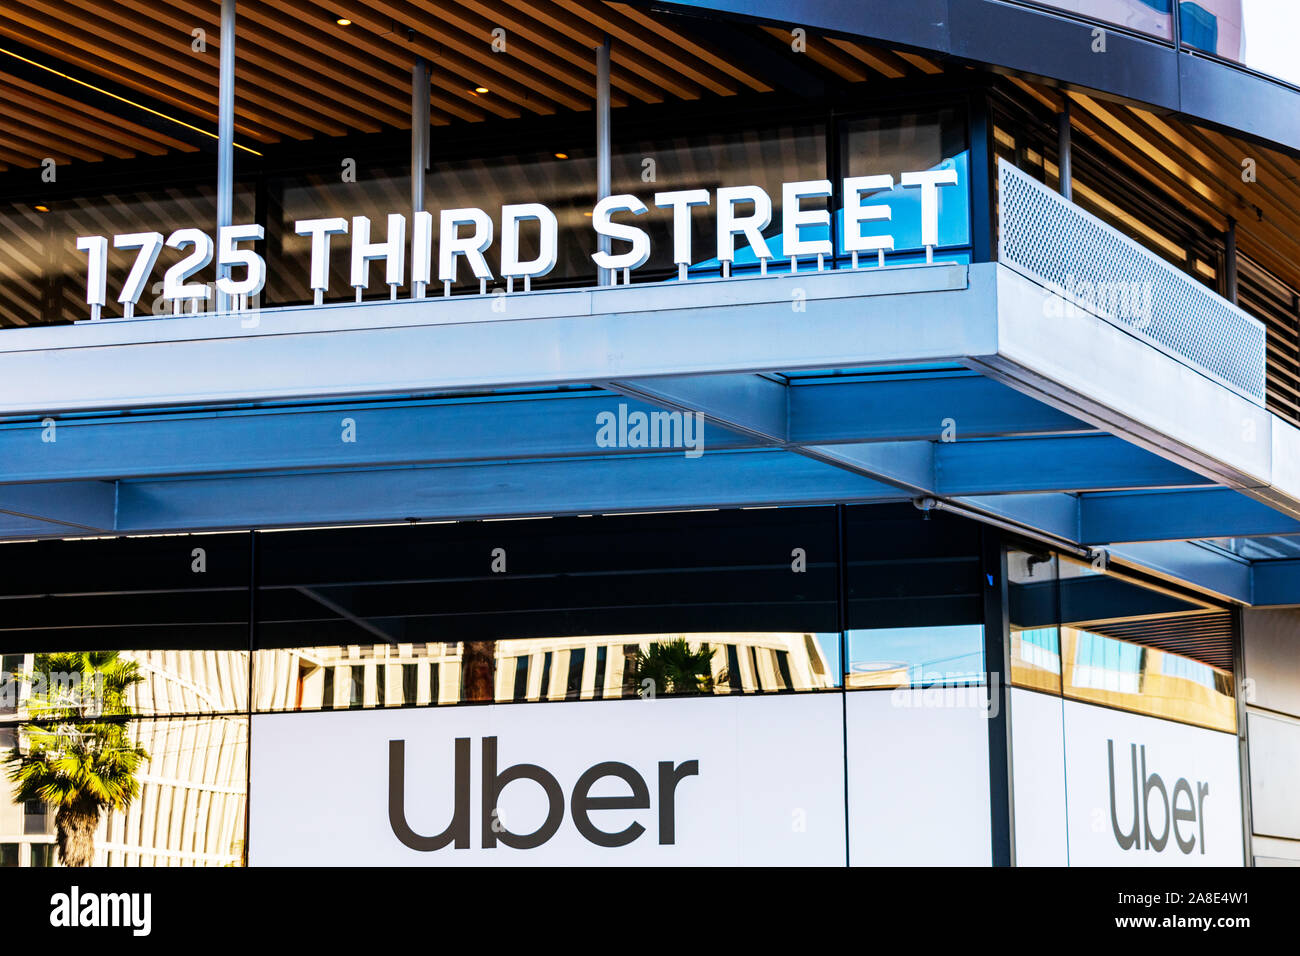 Uber segno presso la nuova e moderna sede del campus Uber tecnologie di rete di trasporto in azienda Mission Bay Foto Stock